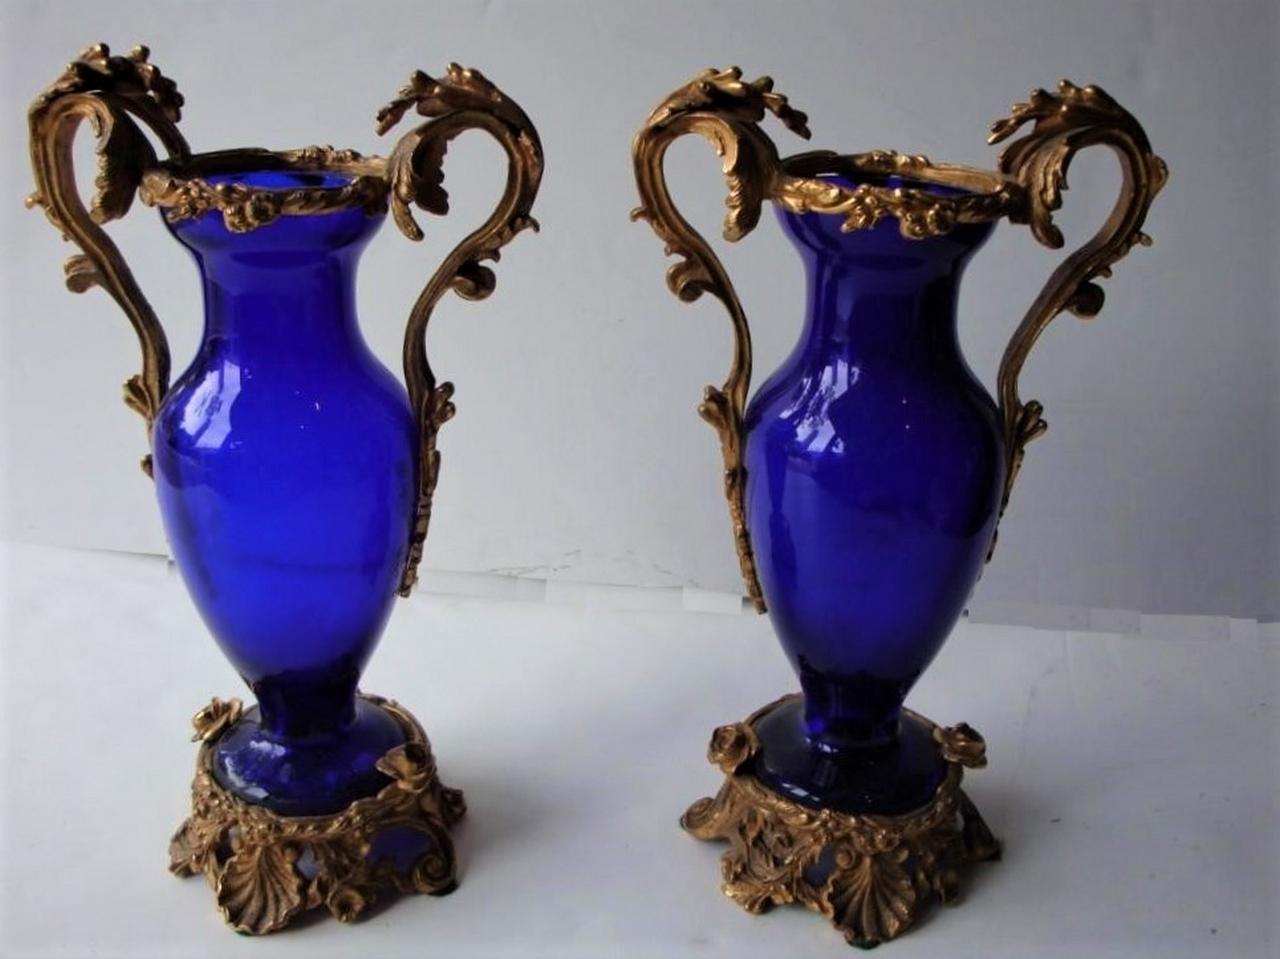 Der folgende Artikel, den wir anbieten, ist ein Paar seltener neoklassischer kobaltblauer Glas- und Bronzevasen aus dem 19. Jahrhundert mit Blumengriffen und -rändern sowie verschnörkelten Sockeln mit Blumen und Muscheln. Diese schönen Stücke wurden